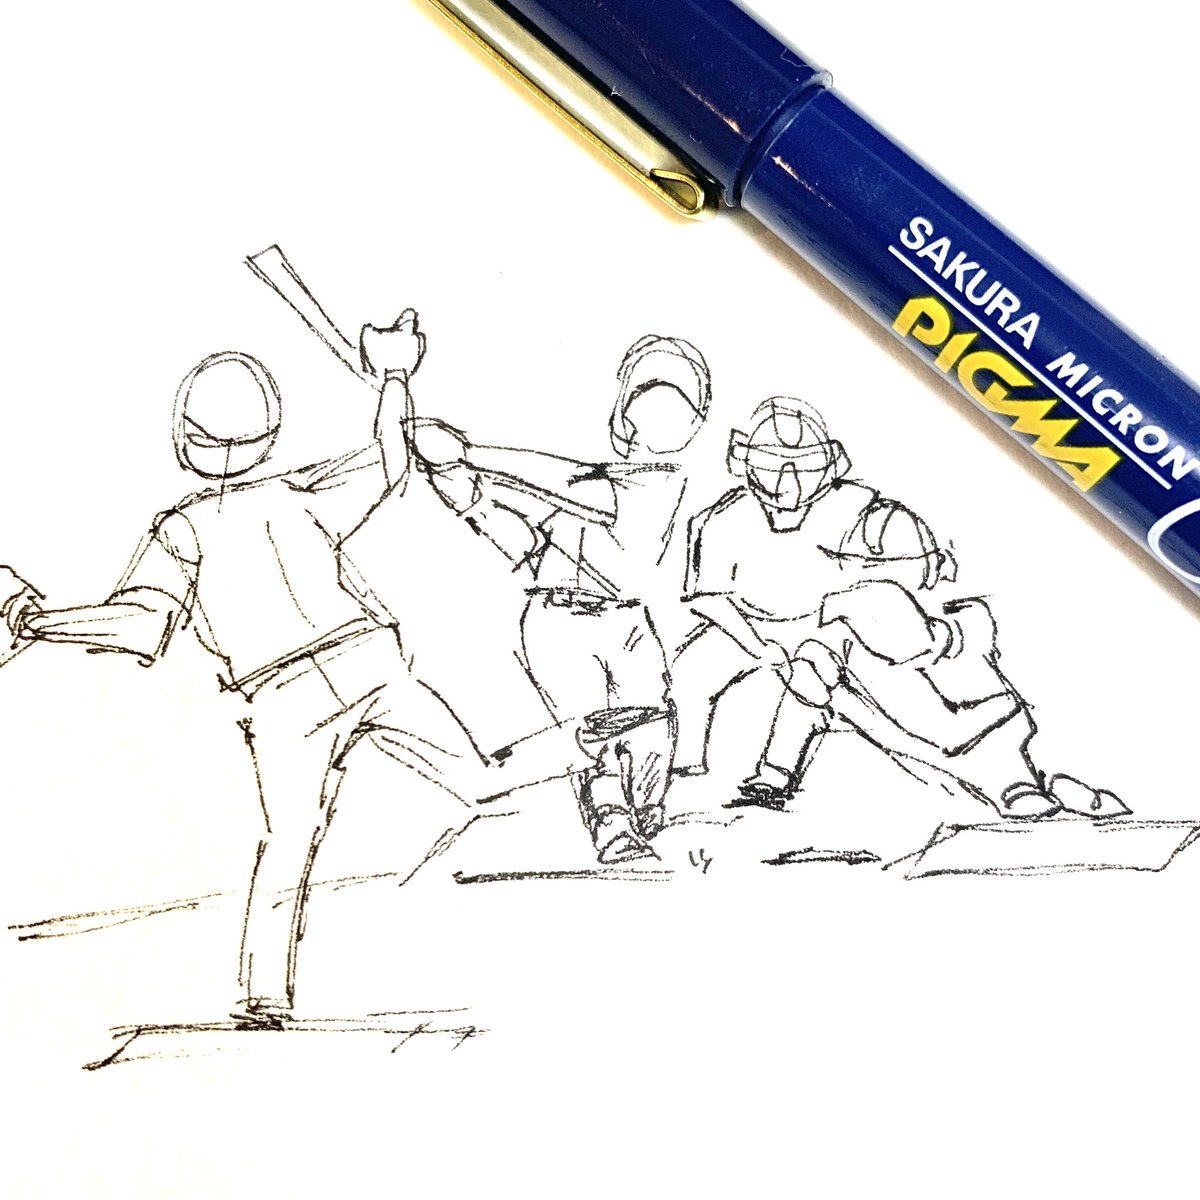 「プロ野球のキャンプ映像でsketch。上手く描こうとか考えずに手を動かすトレーニ」|hico(ひこ)@8/18〜8/20個展のイラスト